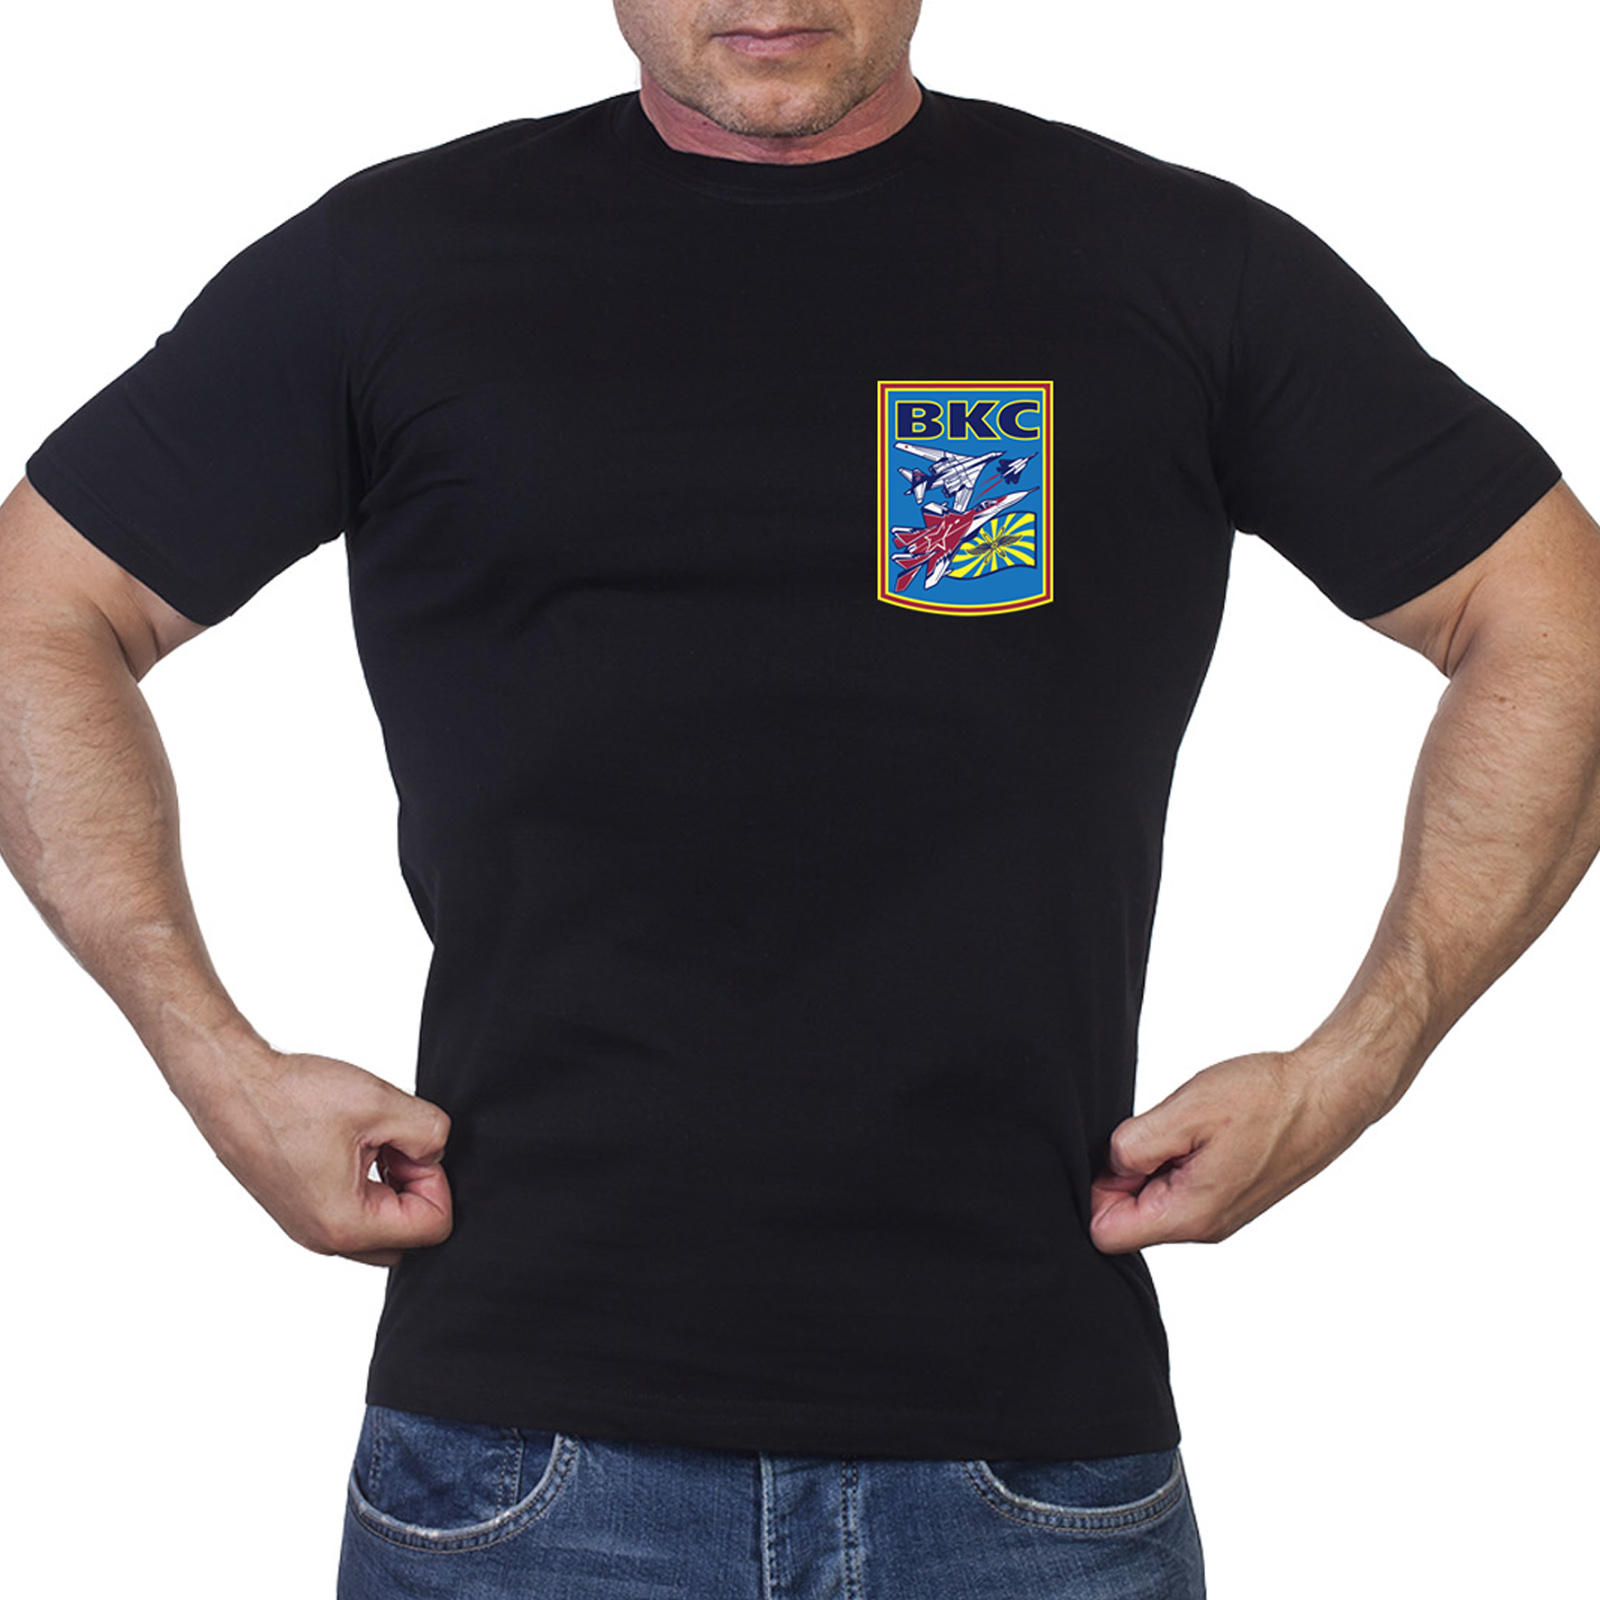 Черная мужска футболка «ВКС»